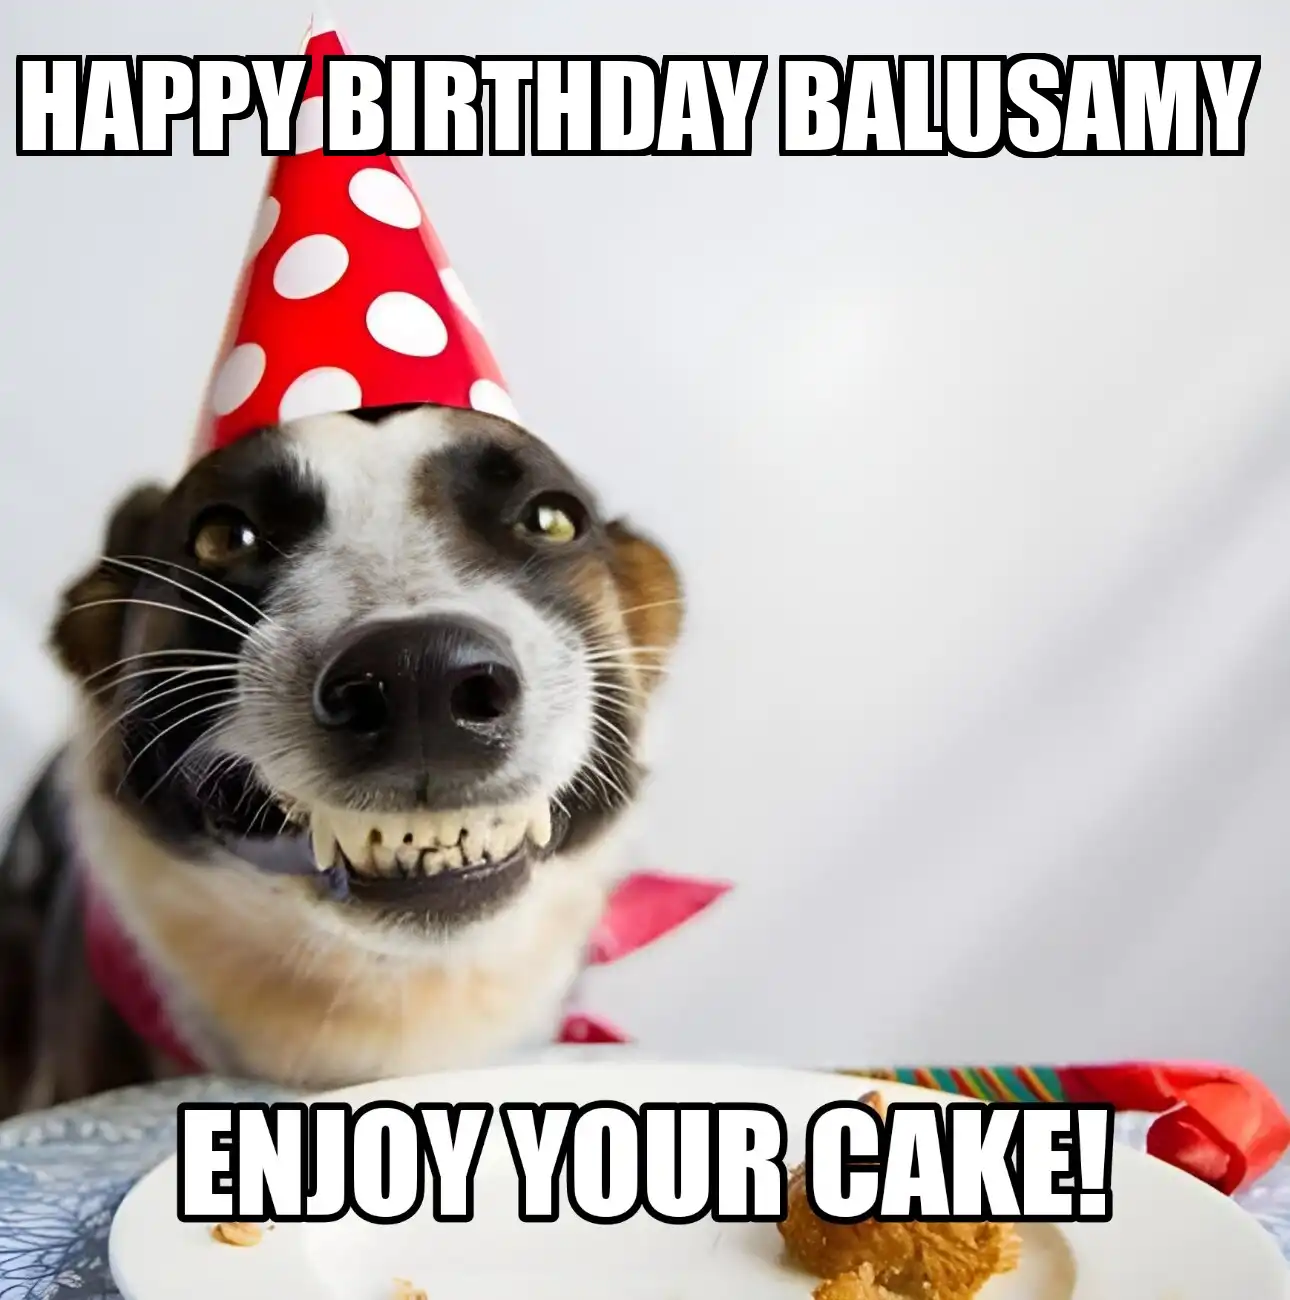 Happy Birthday Balusamy Enjoy Your Cake Dog Meme